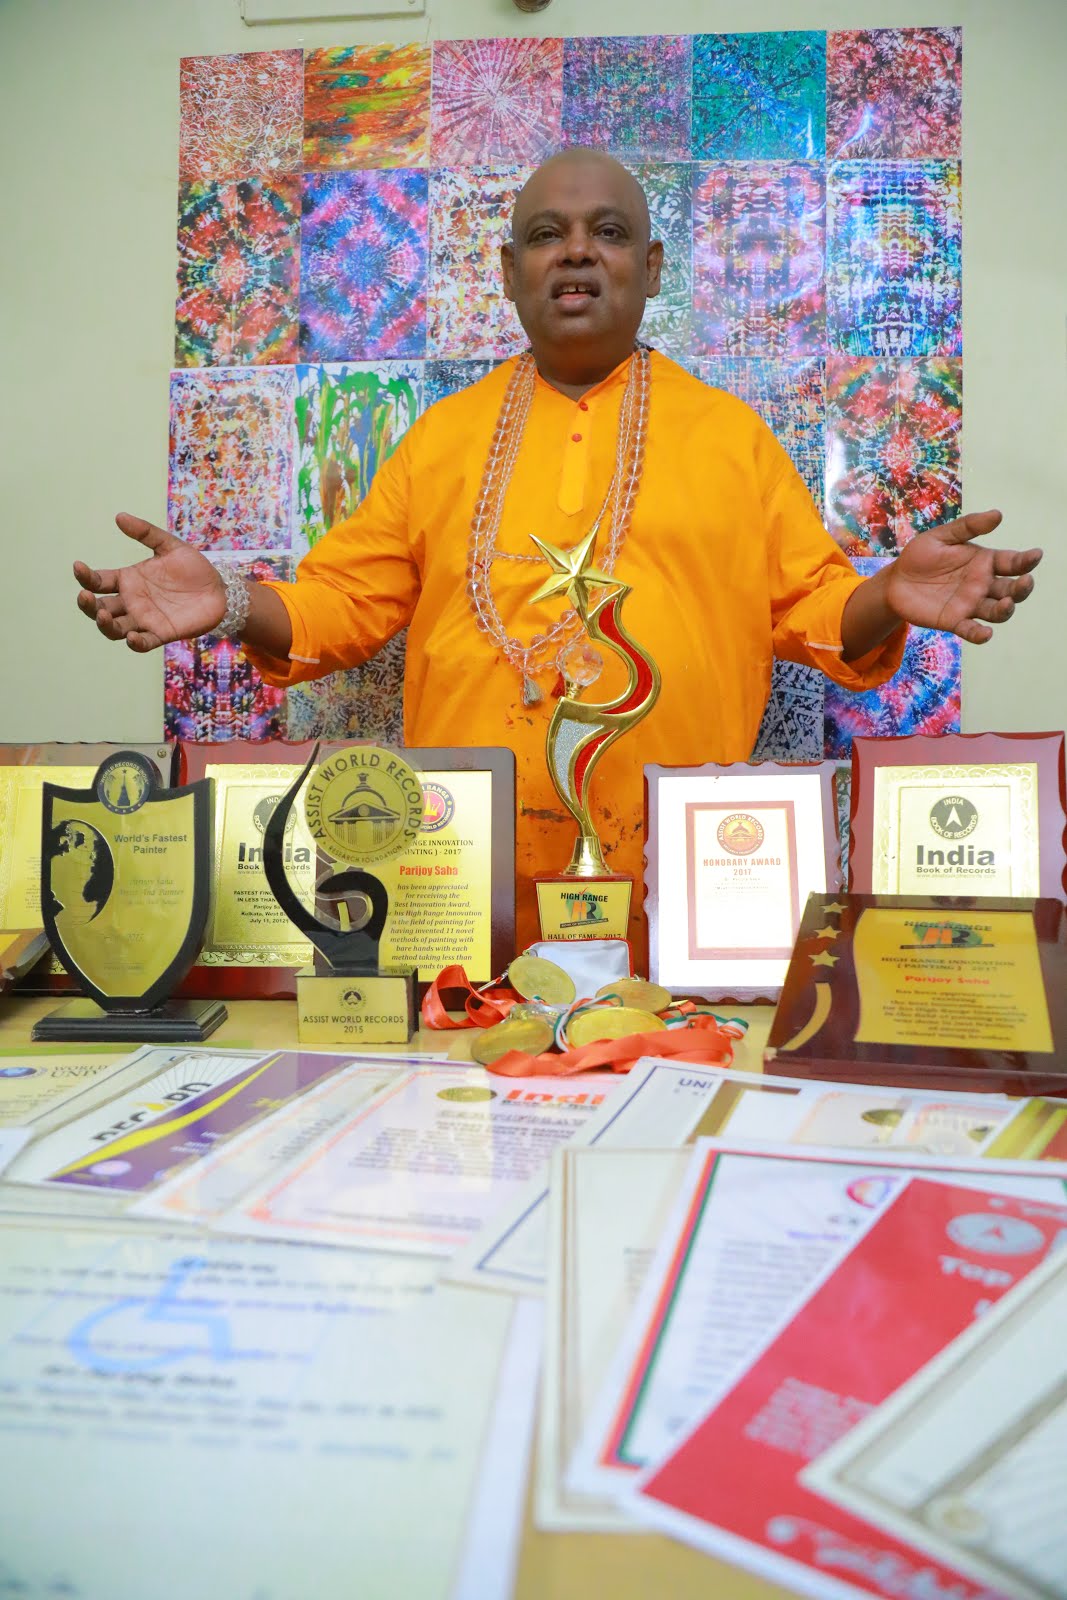 Parijoy Saha with certificates and awards.